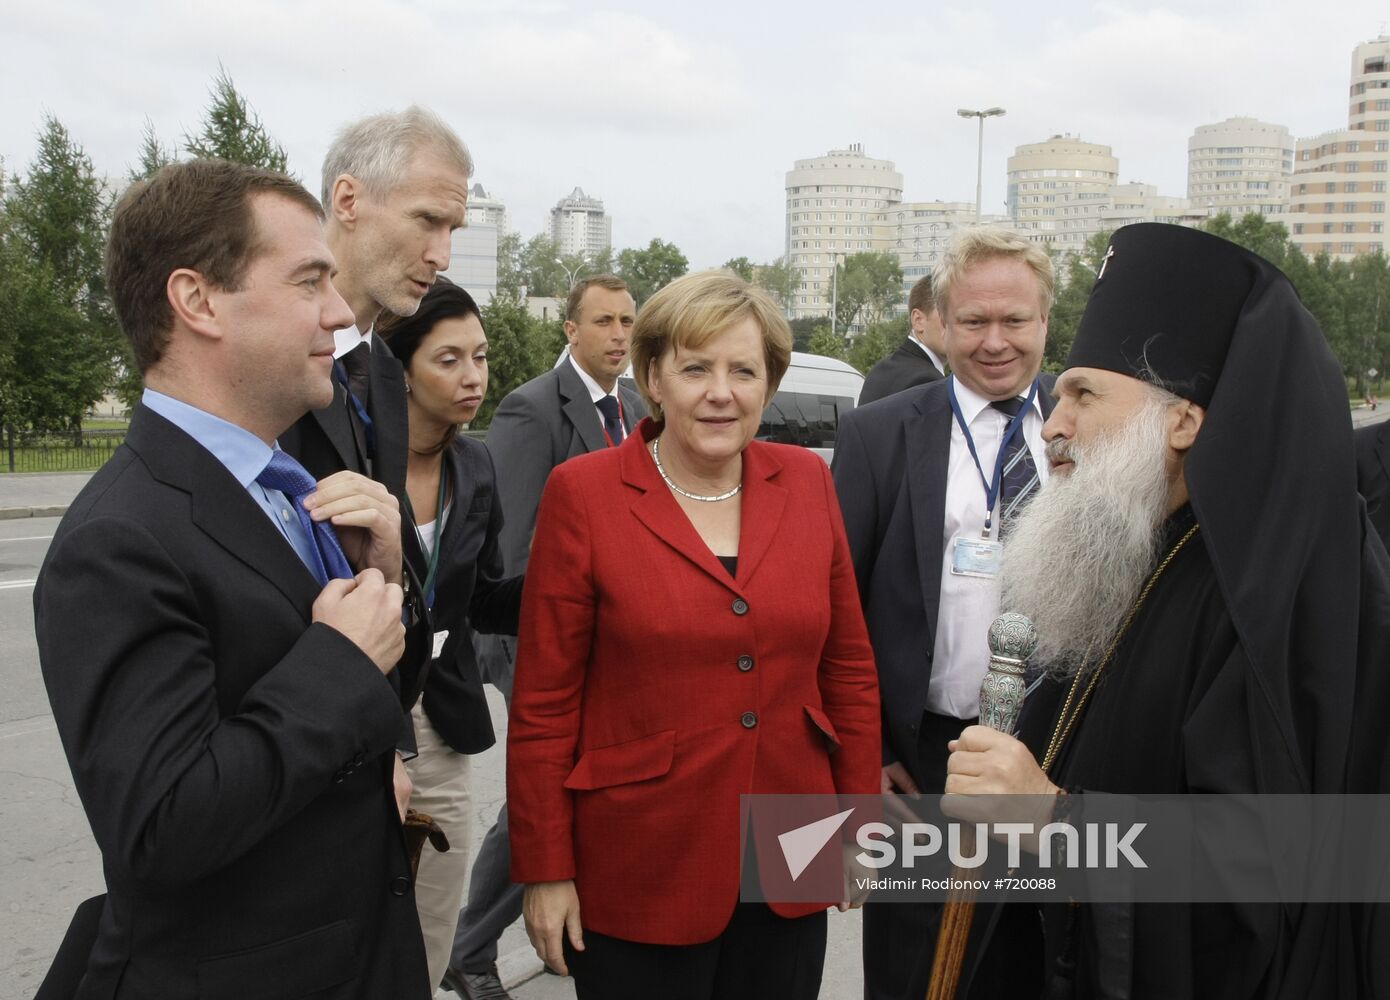 Dmitry Medvedev and Angela Merkel in Yekaterinburg